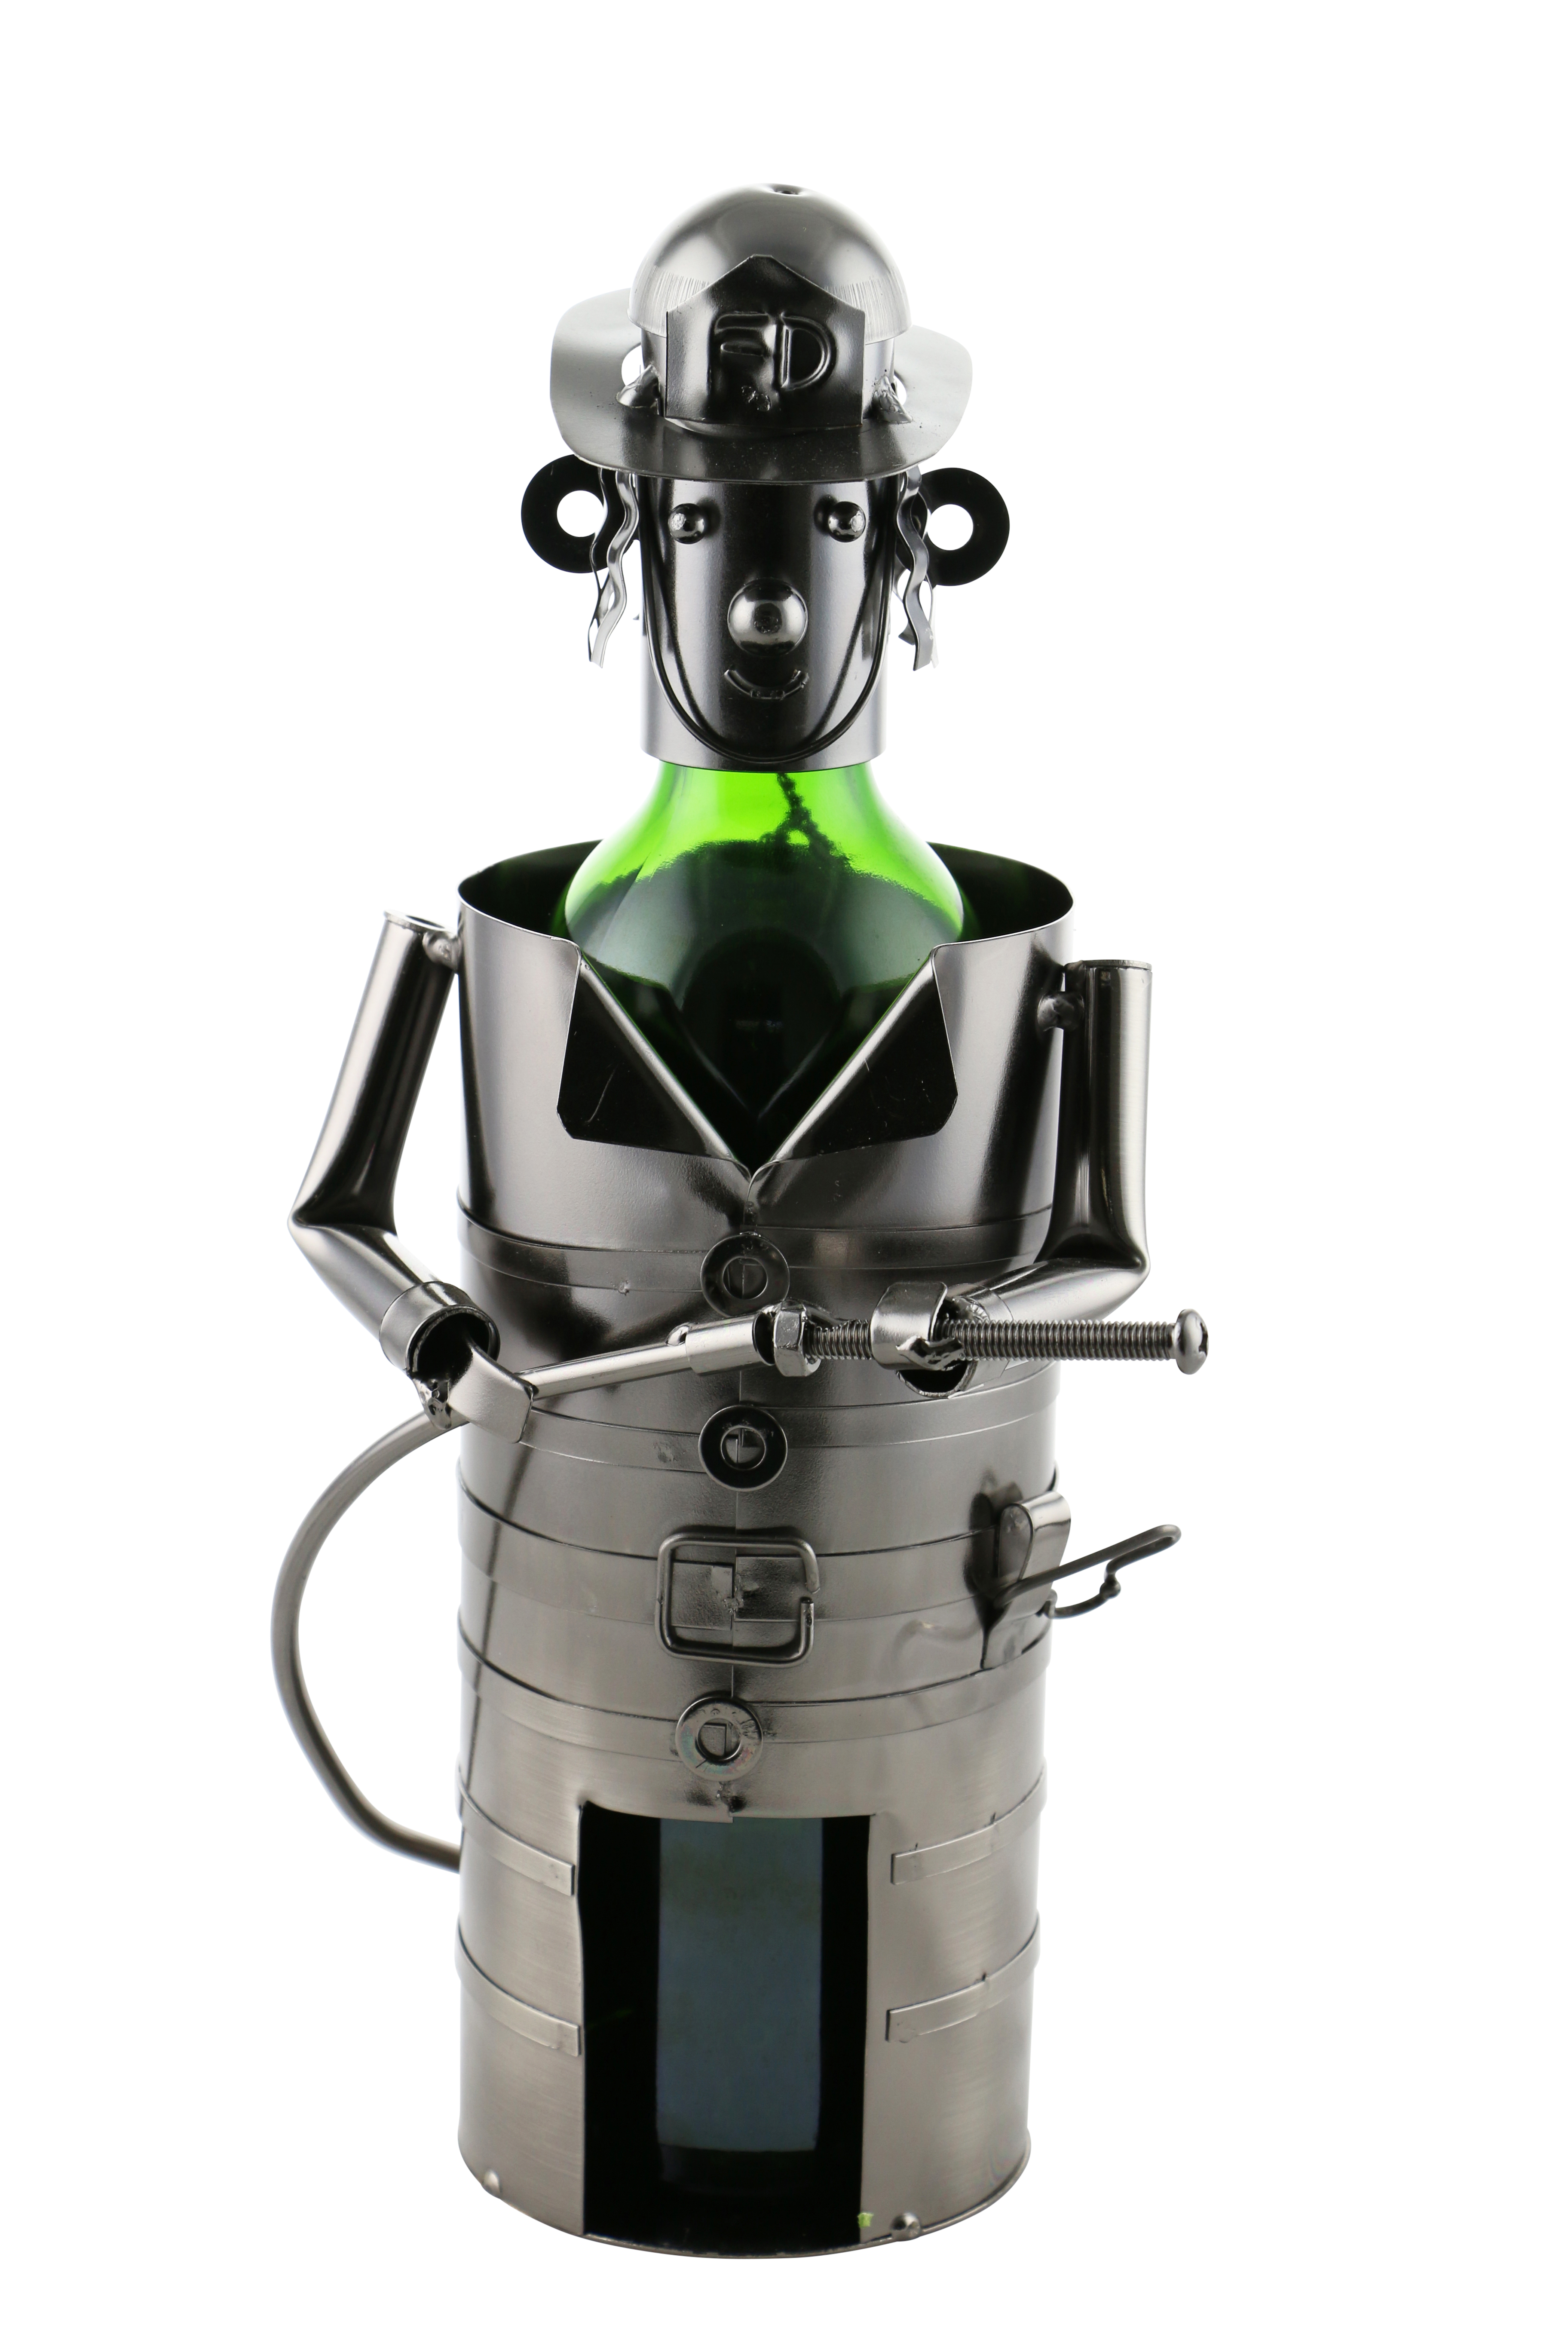 Zb820 Wine Bottle Holder - Fireman